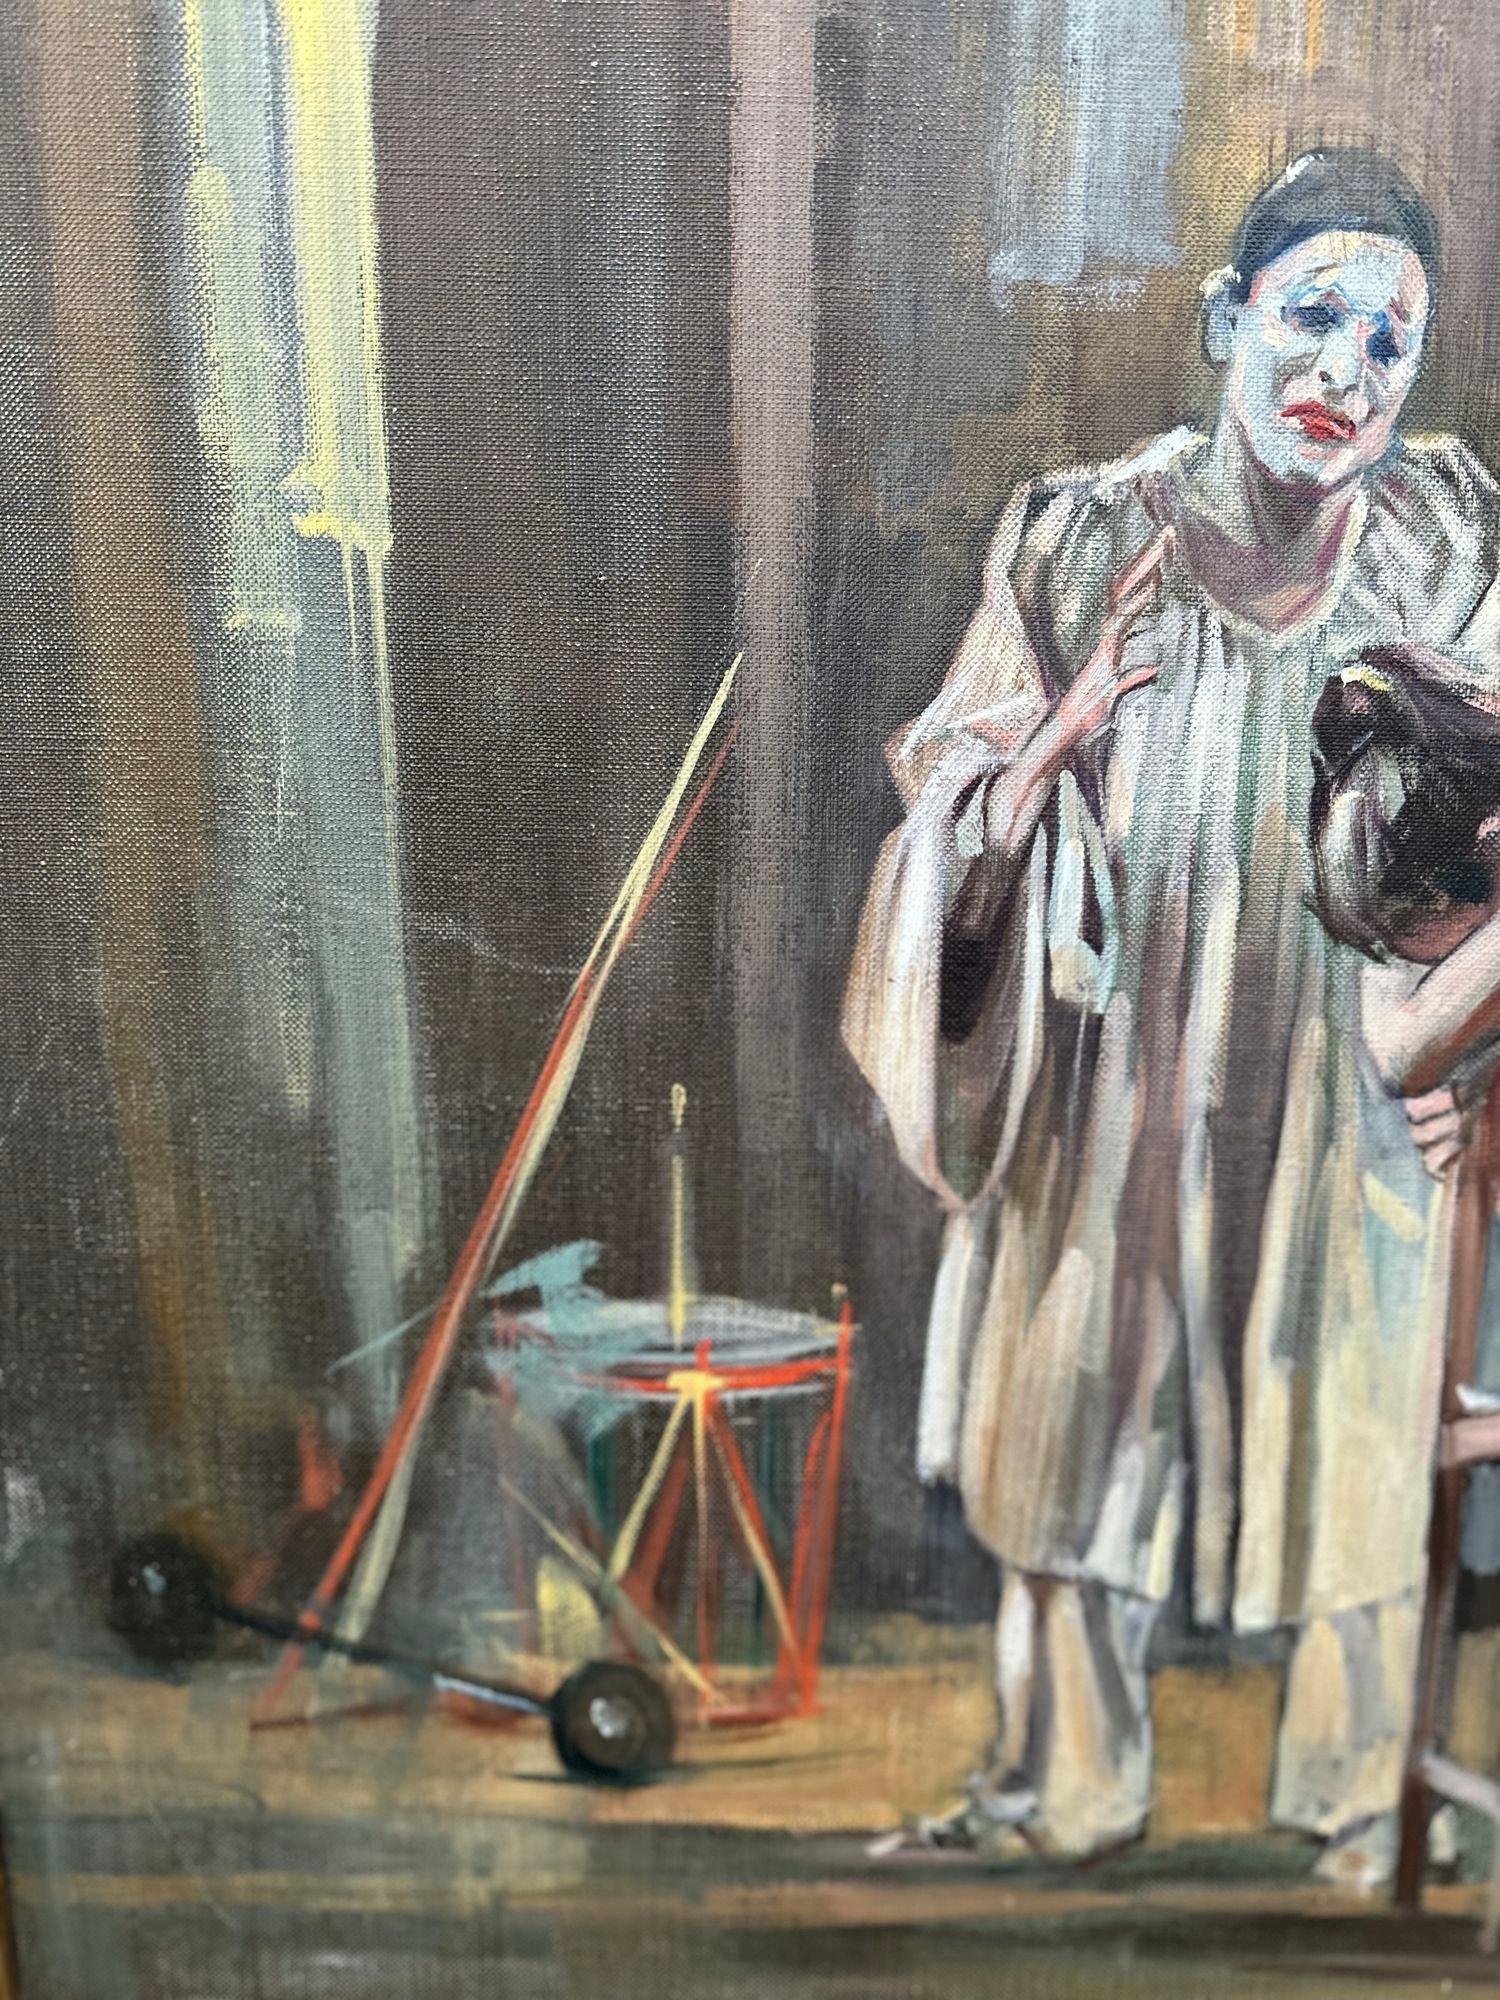 Peinture italienne vintage de Giordano Giovanetti représentant au cœur du tableau une scène poignante : une ballerine désemparée assise et consolée par ce qui semble être un mime ou un clown.
Ses traits rudes et son expression douce traduisent un